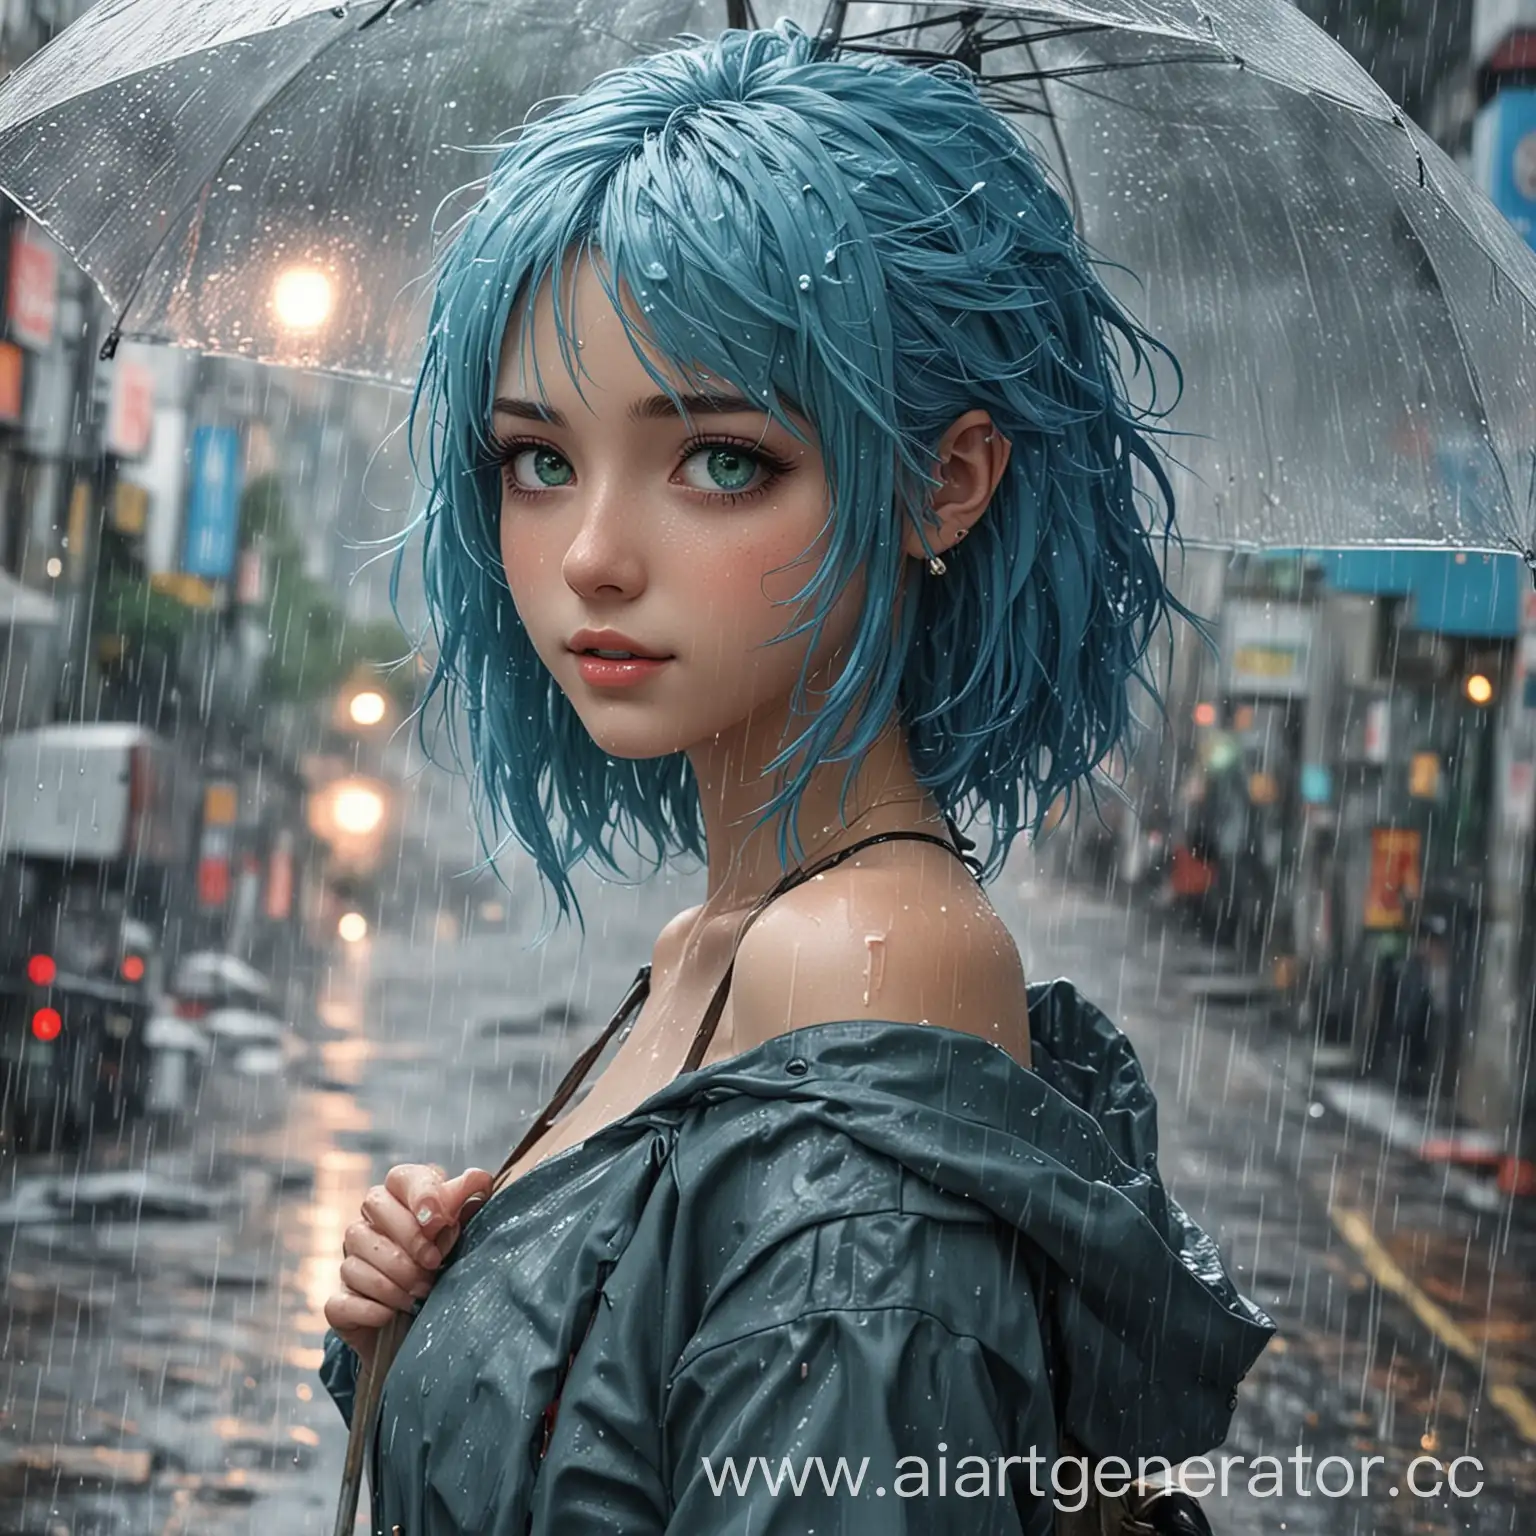 Аниме девушка с голубыми волосами и зелеными глазами идет дождь сзади девушки очень красивый токио 